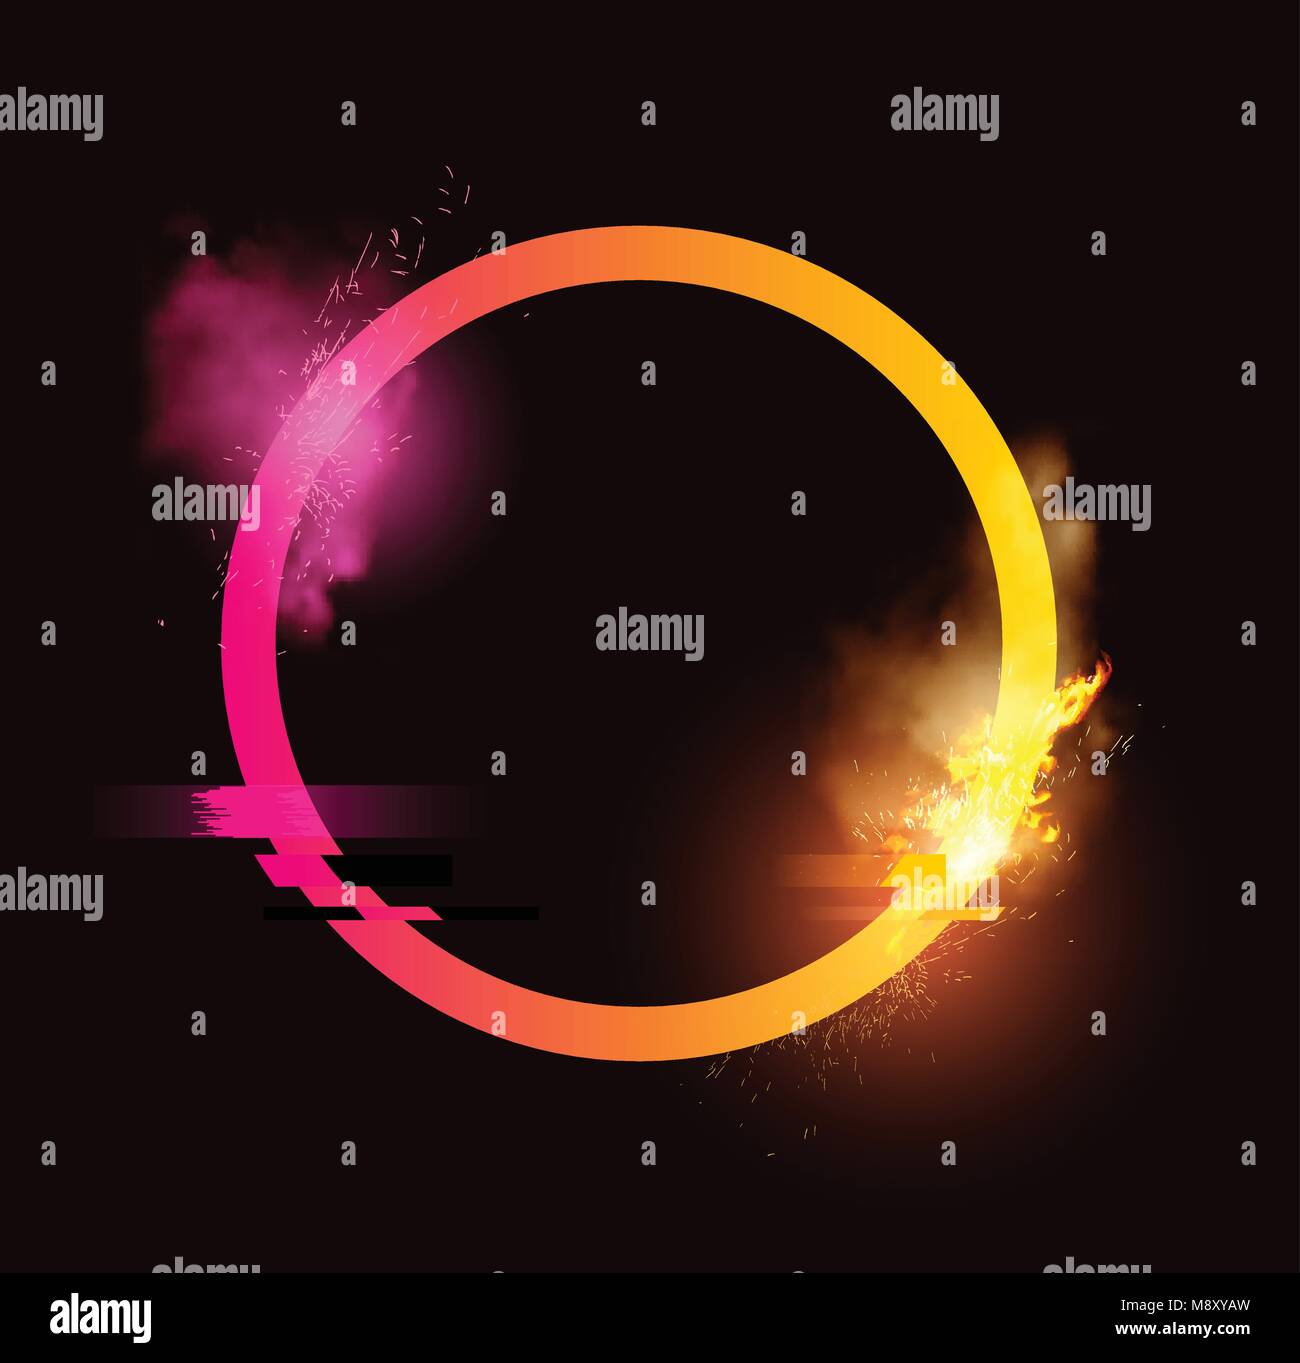 Un anello illuminato con scintille, fumo e un effetto di glitch. La minima illustrazione vettoriale design. Illustrazione Vettoriale